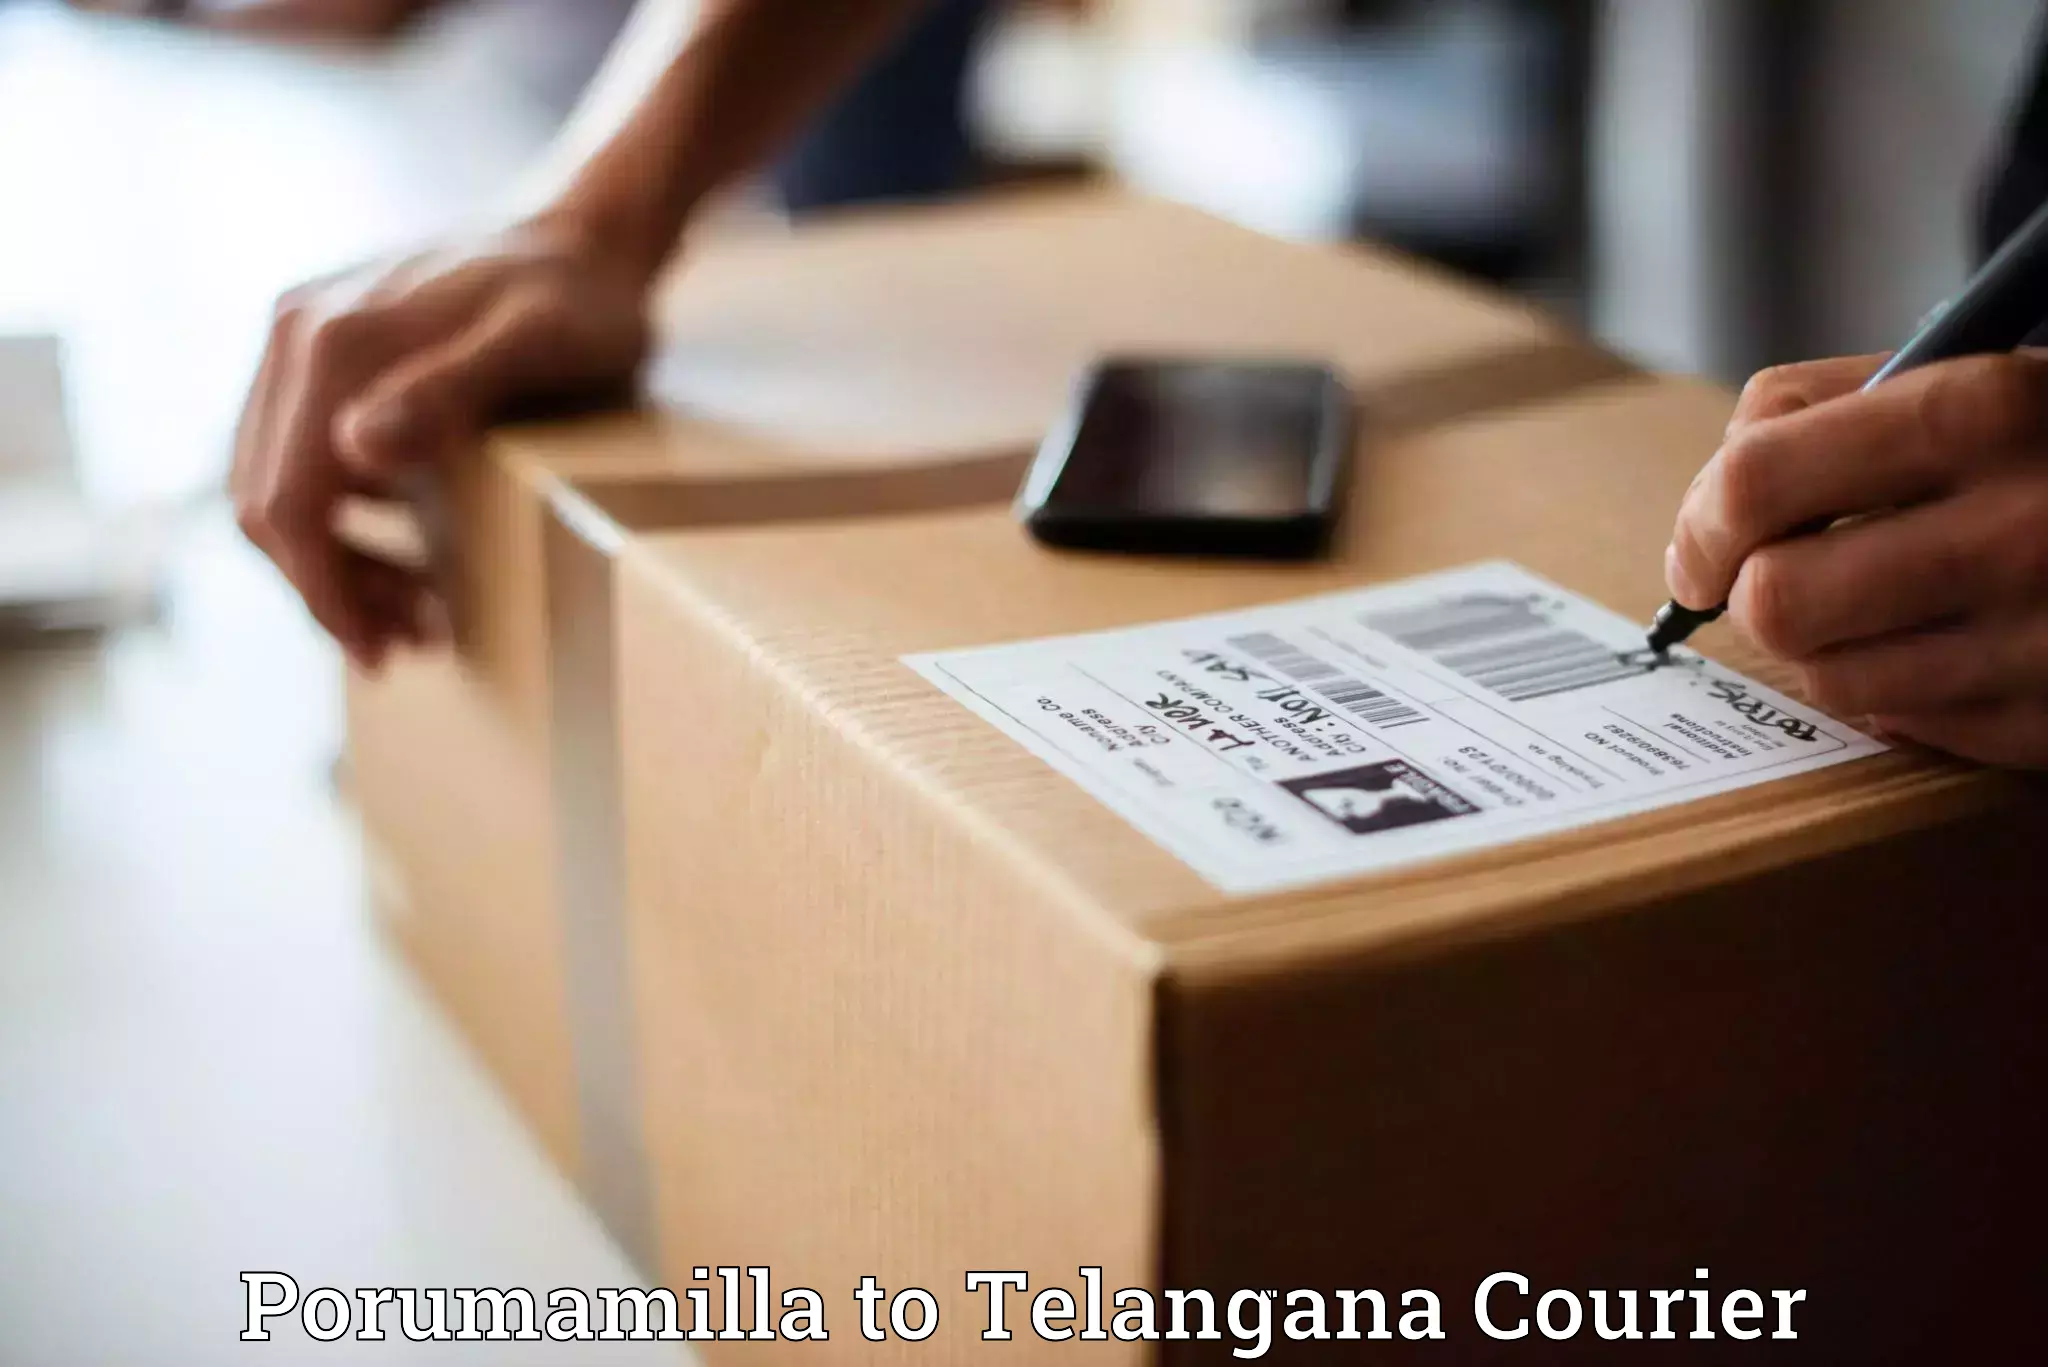 Diverse delivery methods in Porumamilla to Manneguda